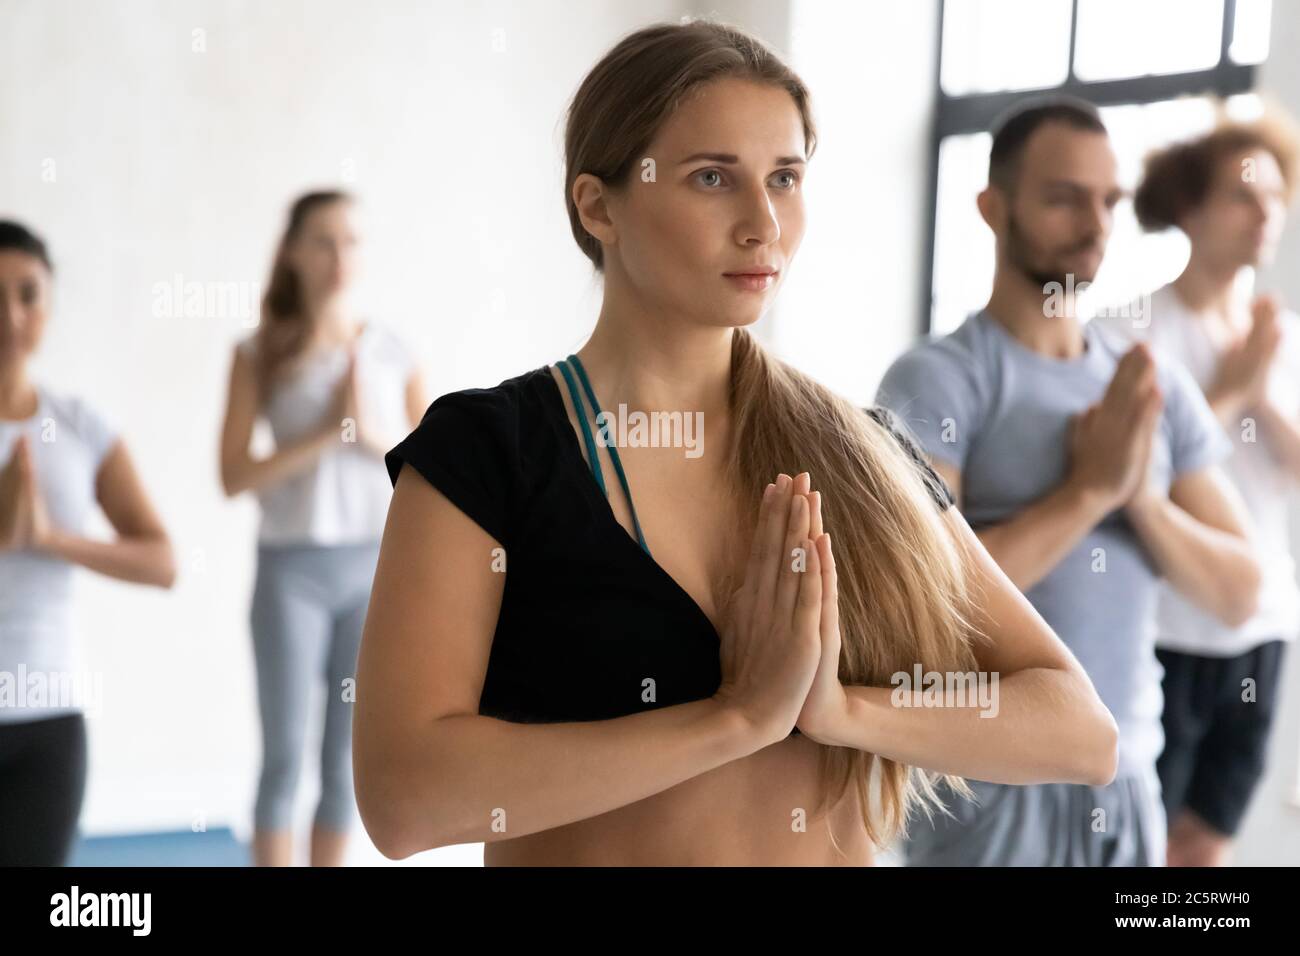 Dankbare europäische Erscheinung schöne Frau mit Namaste Zeichen stehen. Stockfoto